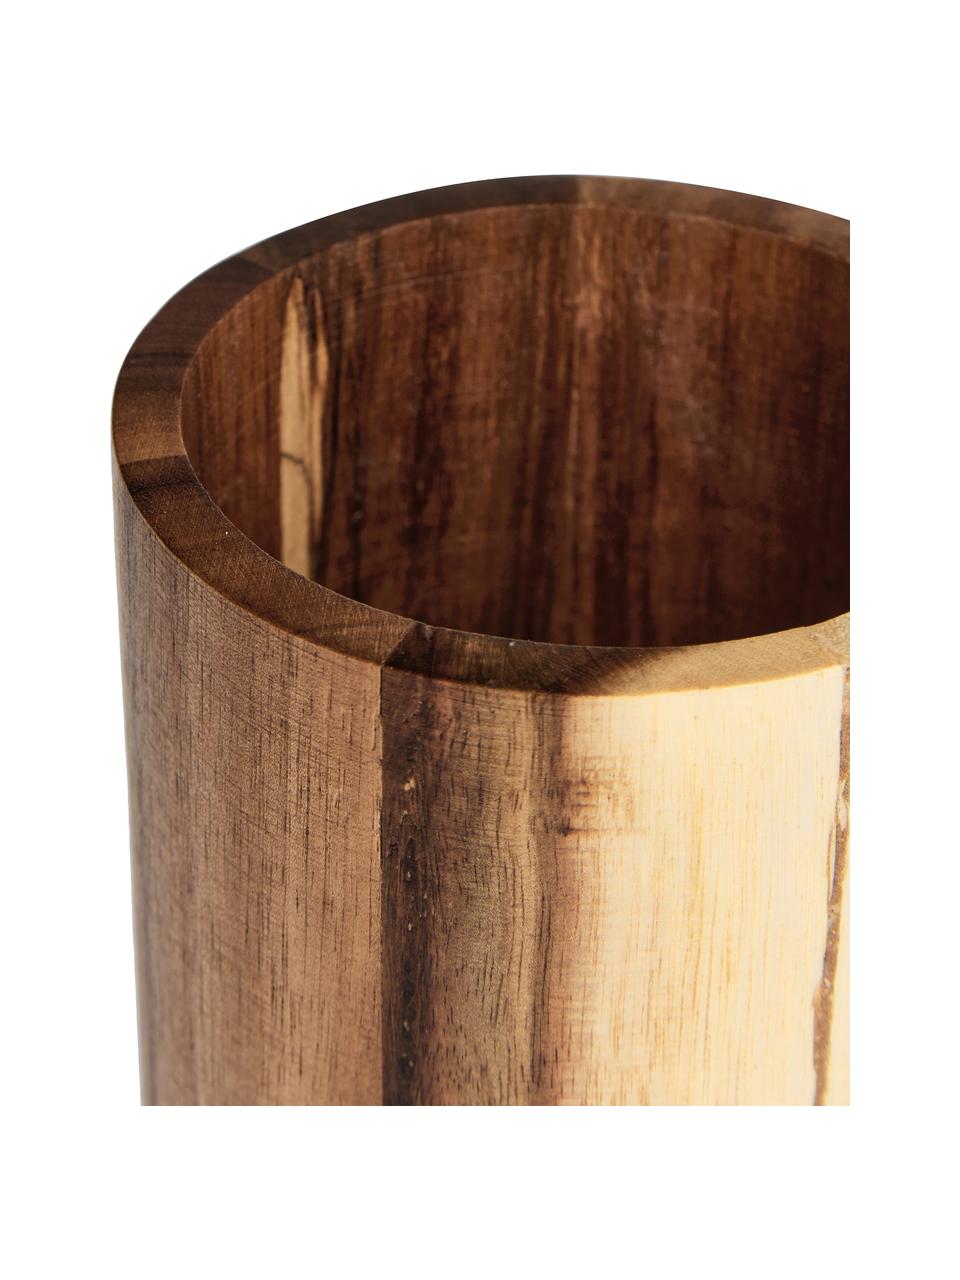 Toilettenbürste Wood aus Akazienholz, Behälter: Akazienholz, Griff: Kunststoff in Stahl-Optik, Akazienholz, Silberfarben, Ø 10 x H 36 cm